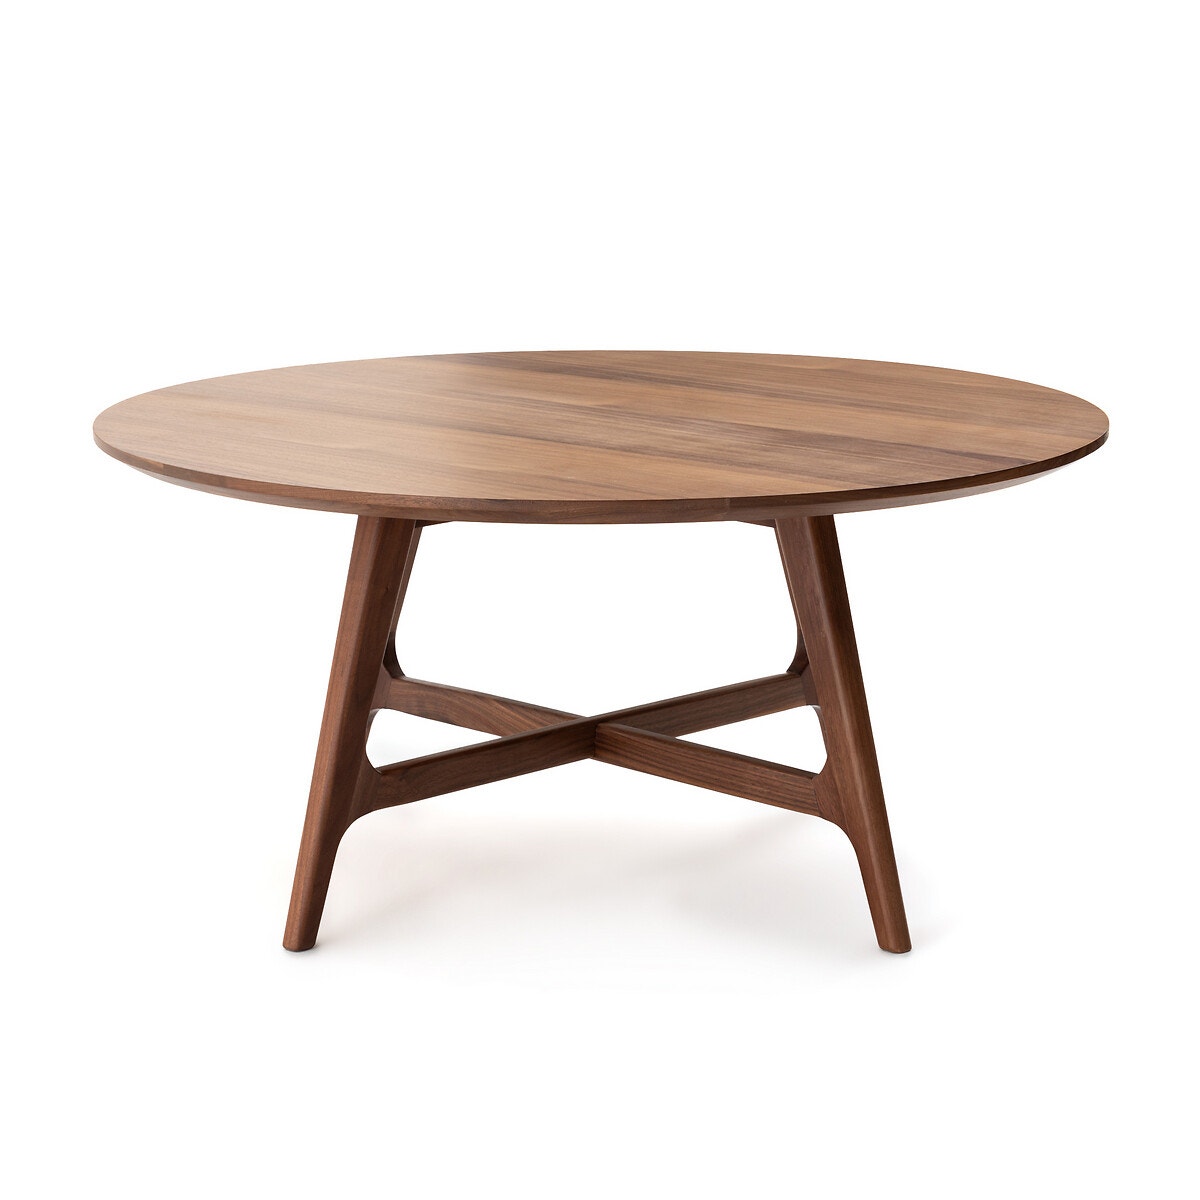 Μεγάλο στρογγυλό χαμηλό τραπέζι από ξύλο καρυδιάς, Larsen